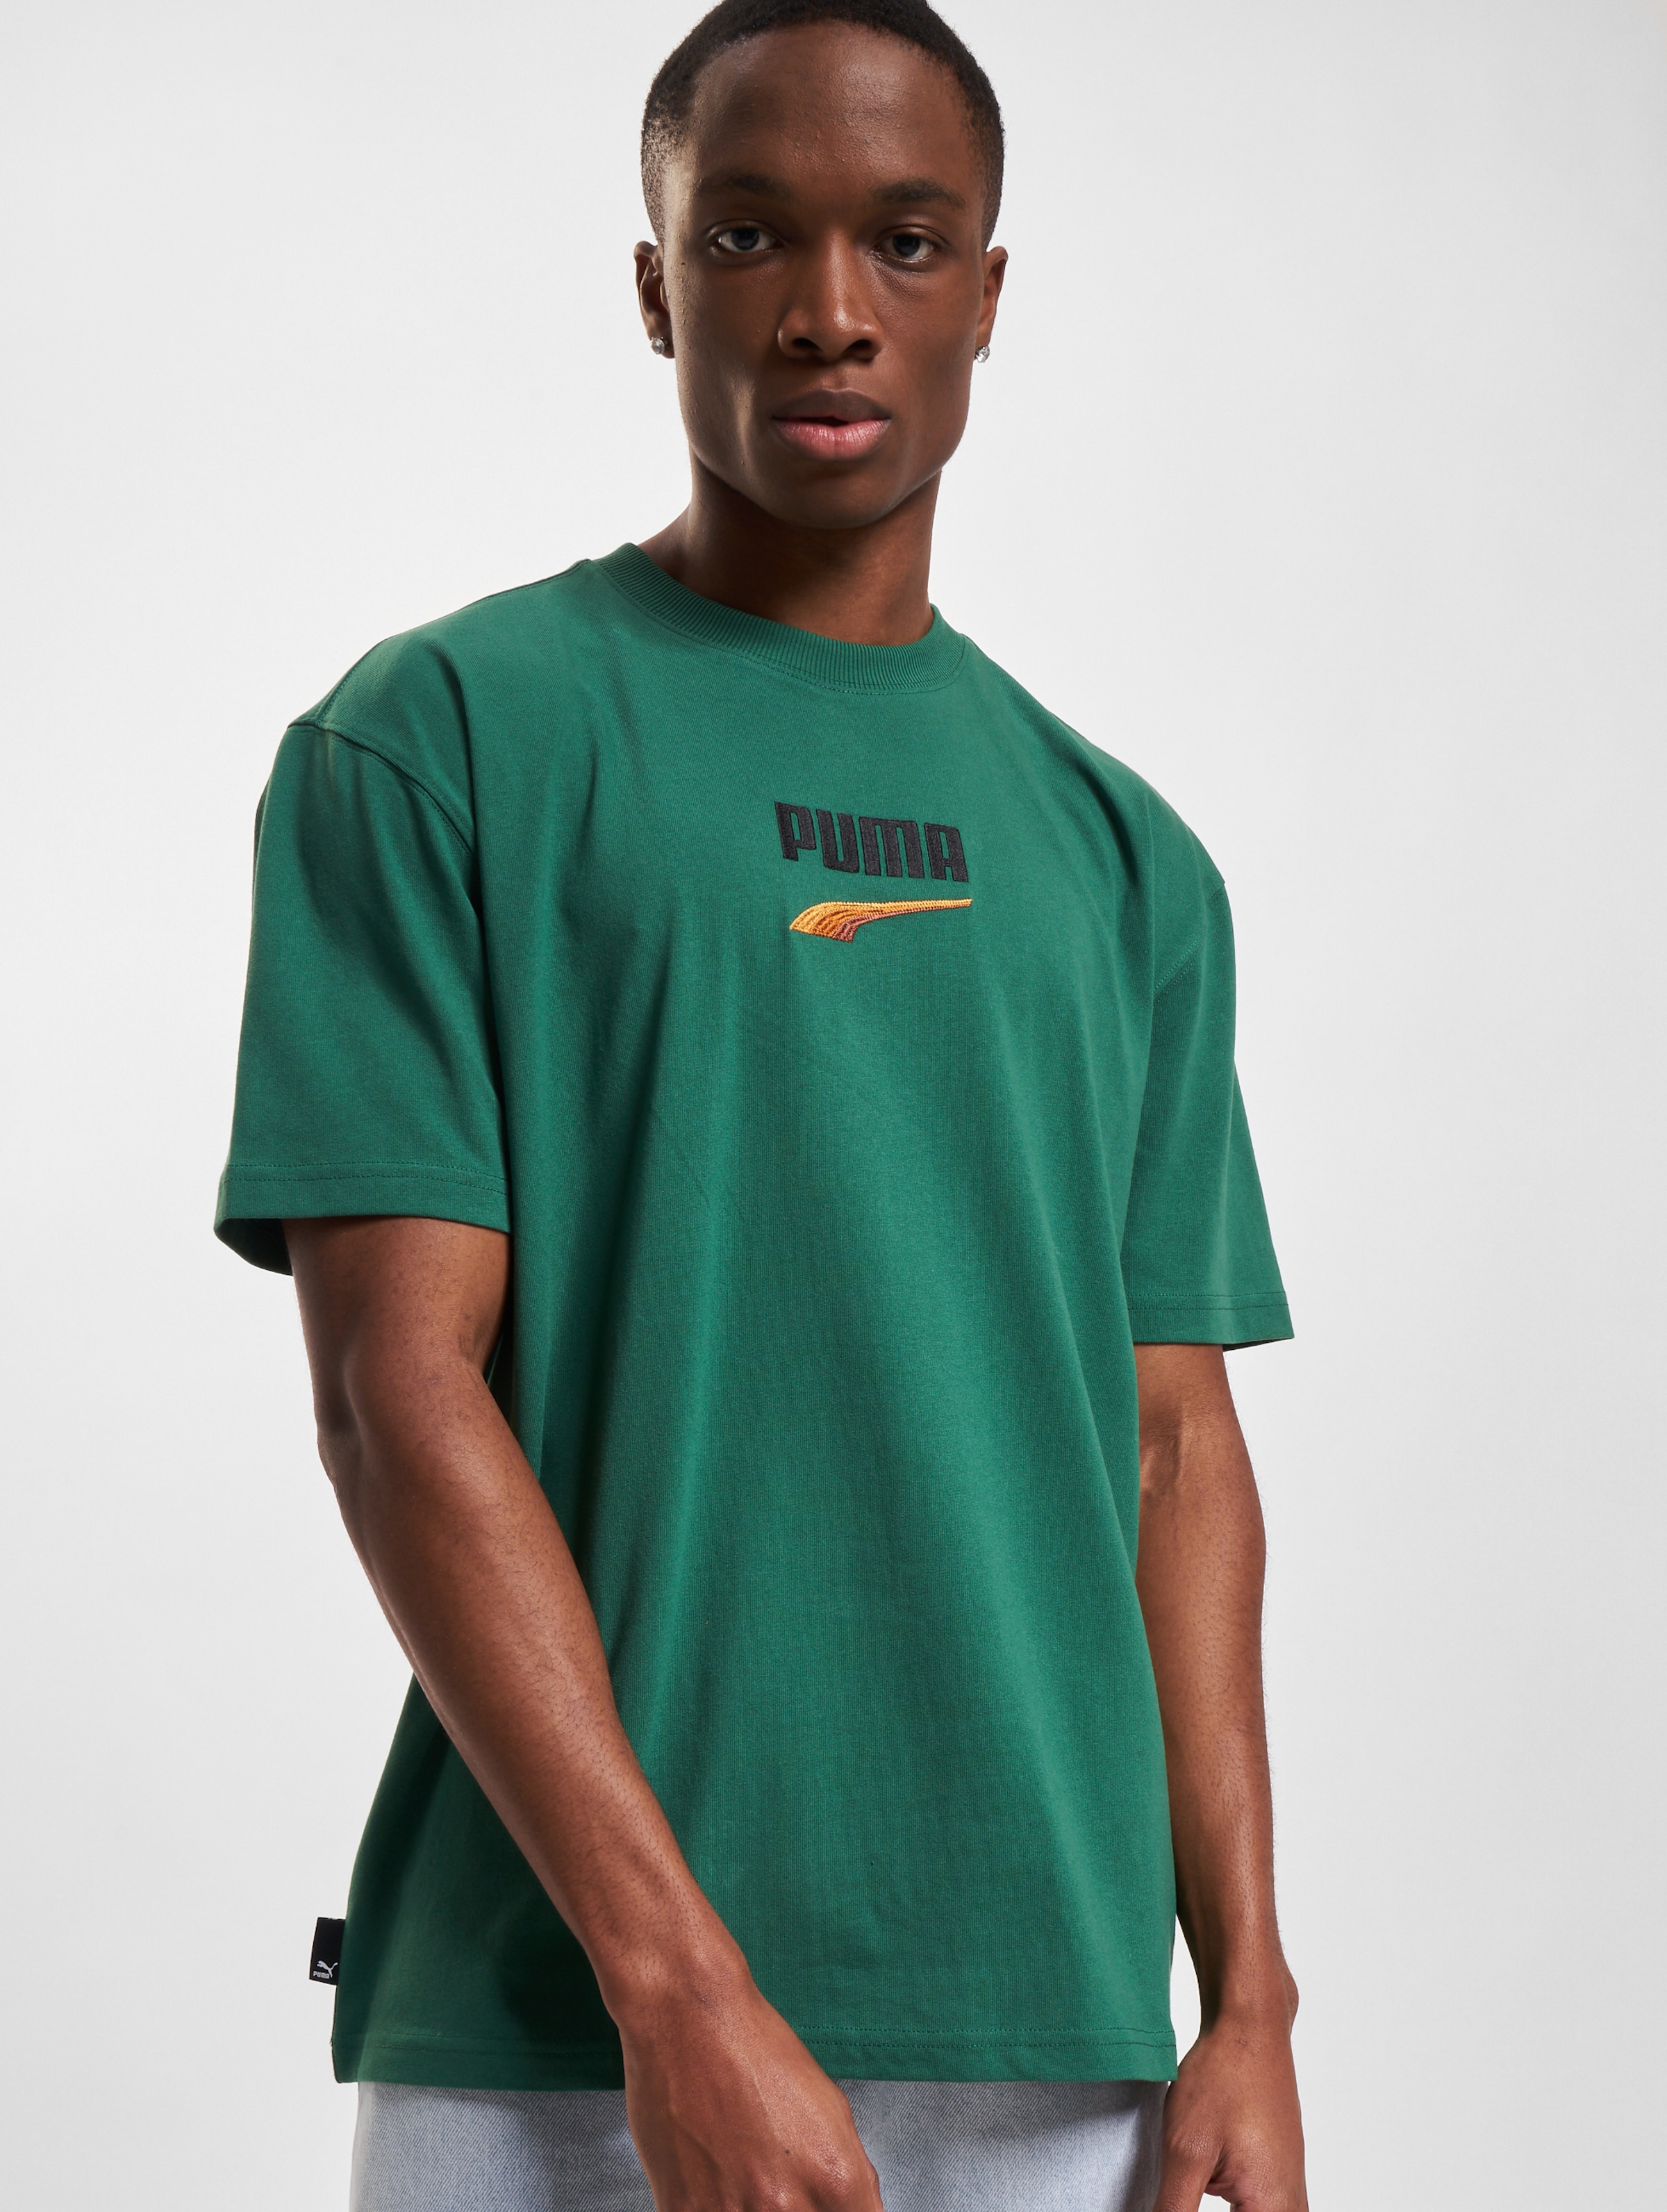 Puma T-Shirt Mannen op kleur groen, Maat XXL